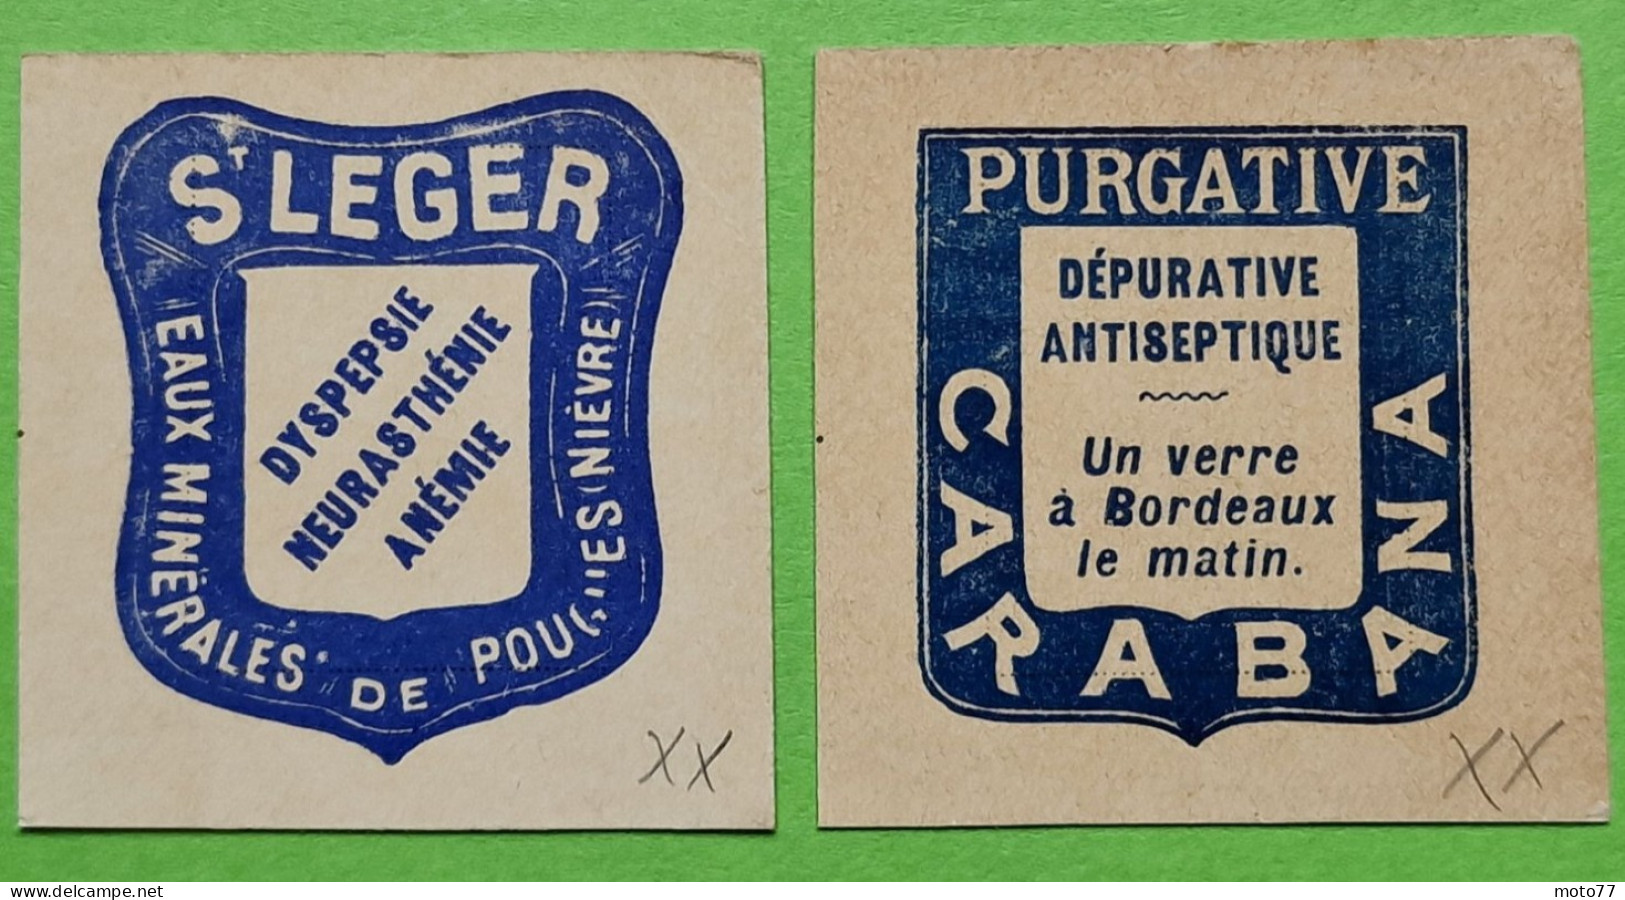 PORTE-TIMBRE France 1370 Et 1092 Yvert & Tellier 2010 - SAINT LEGER CARABANA - Fragment Imprimé Sans Timbre / COTE 70€ - Zonder Classificatie